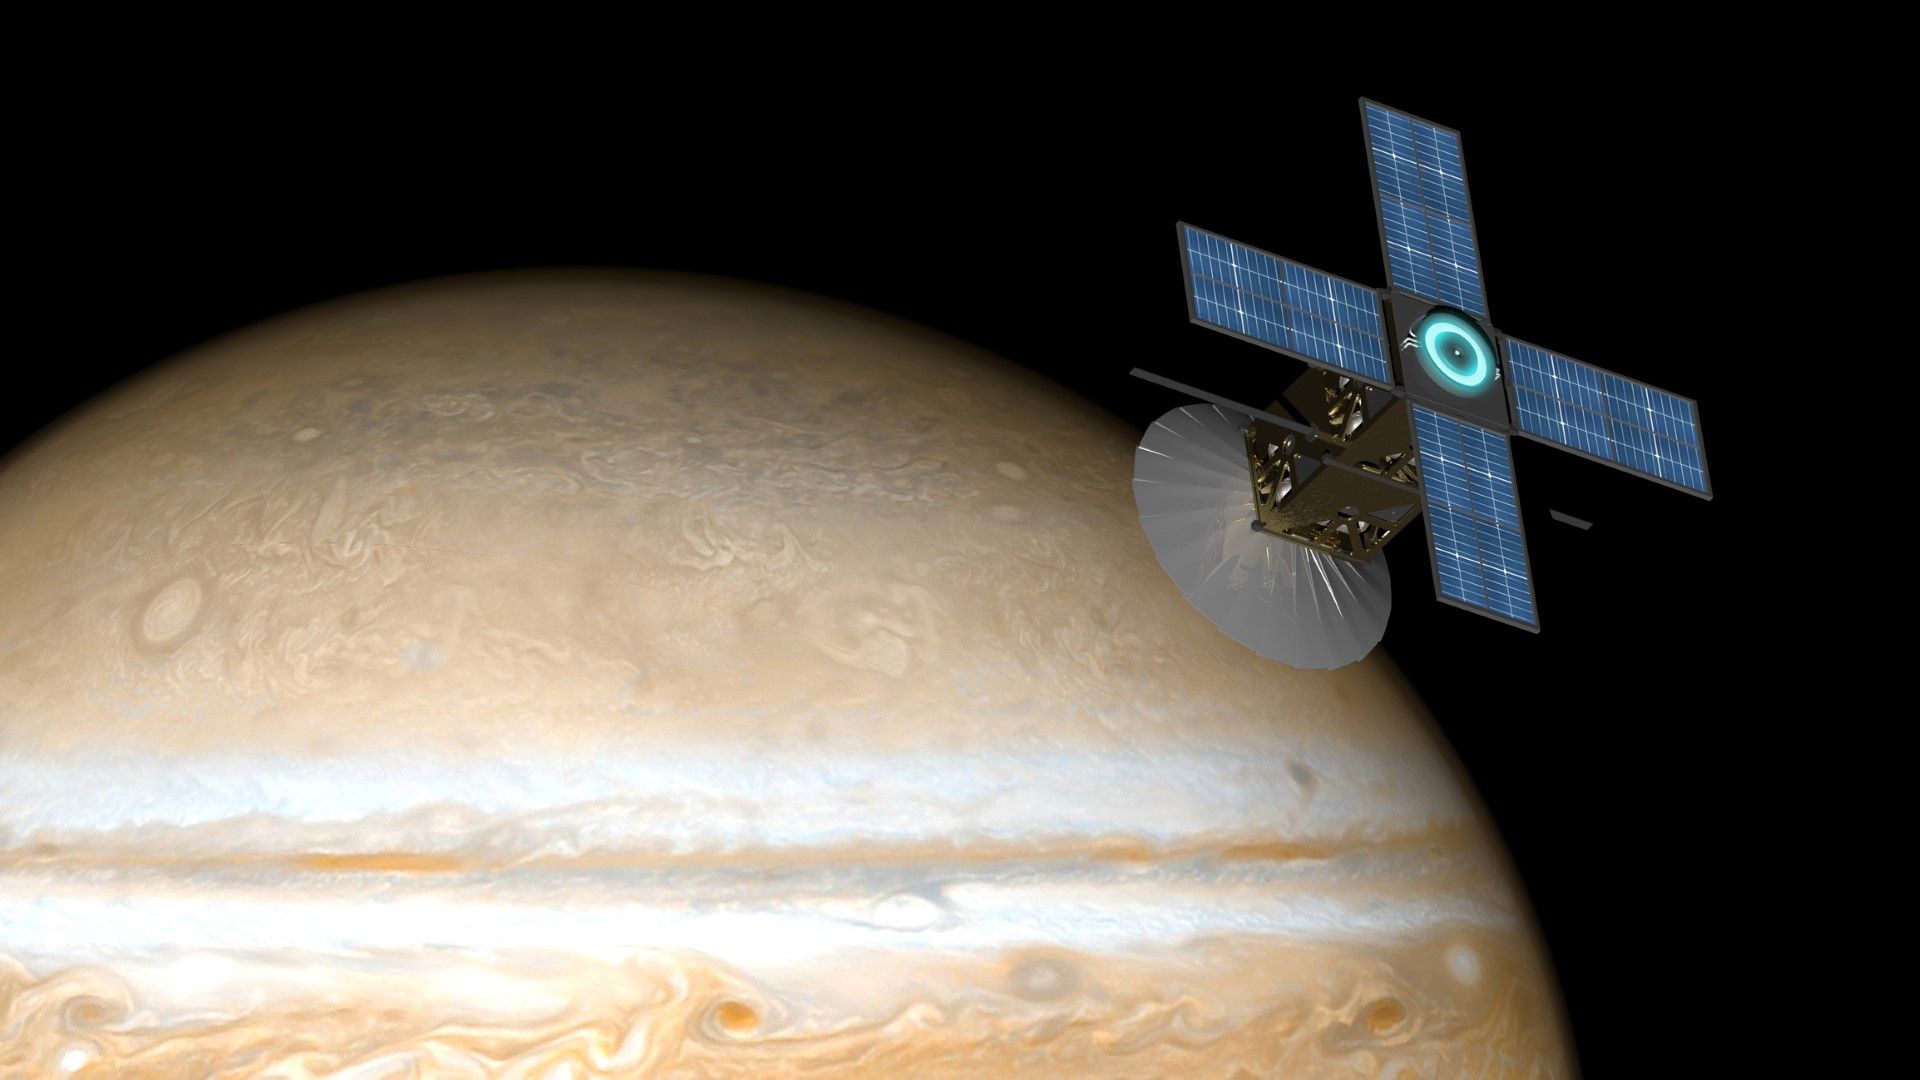 Сондата "Джуно" се намира в орбита около Юпитер